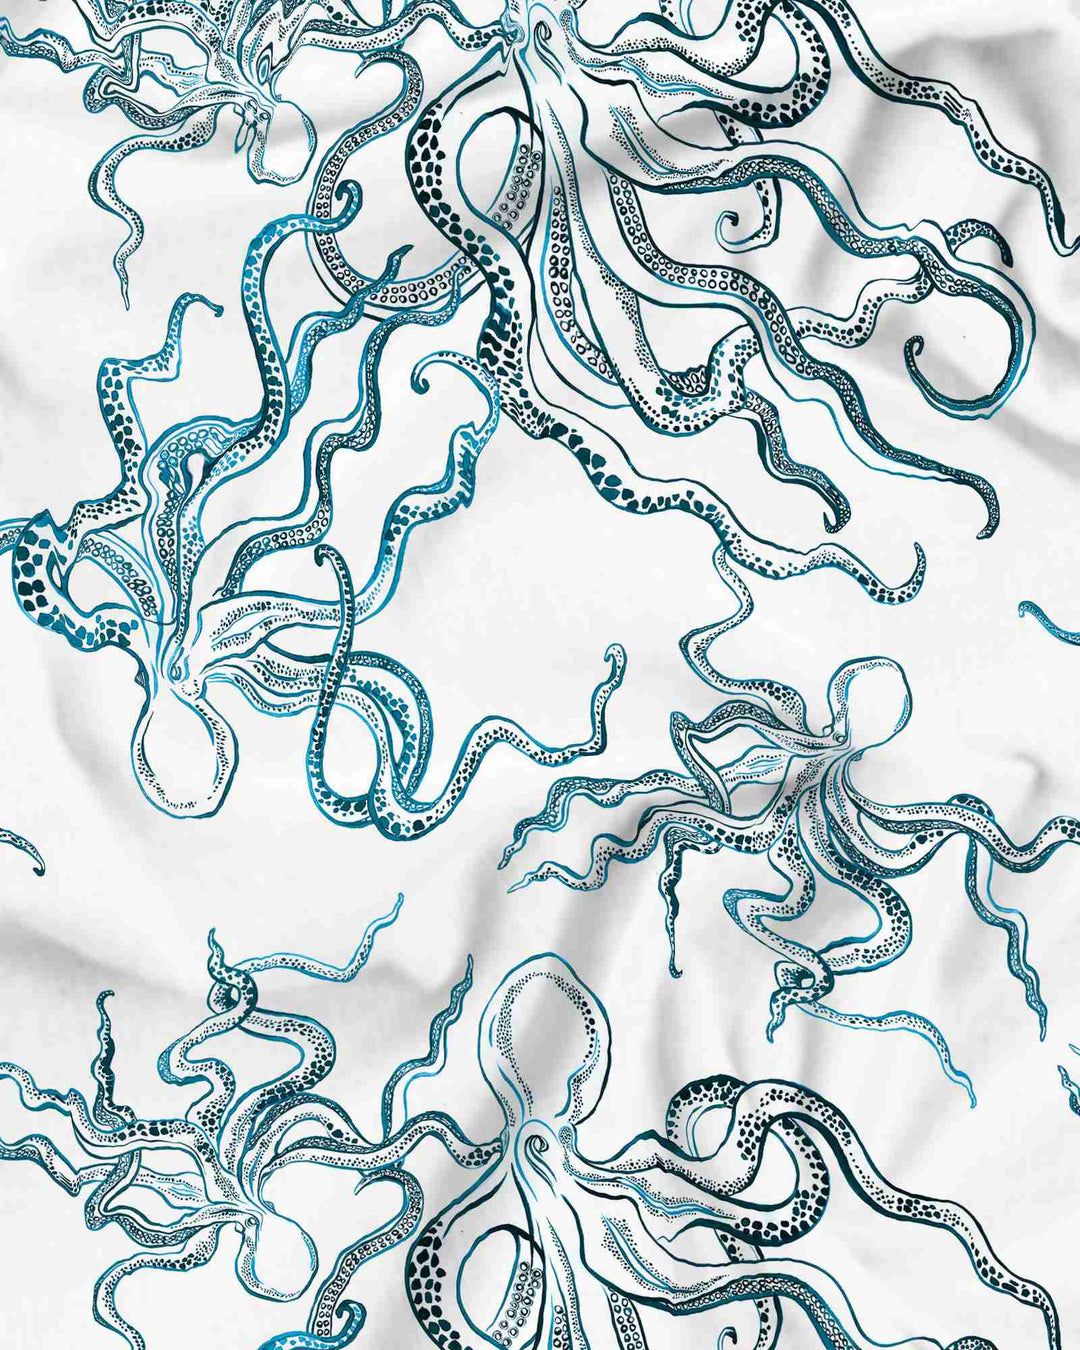 Women's cotton pyjamas set - Indigo octopuses on white